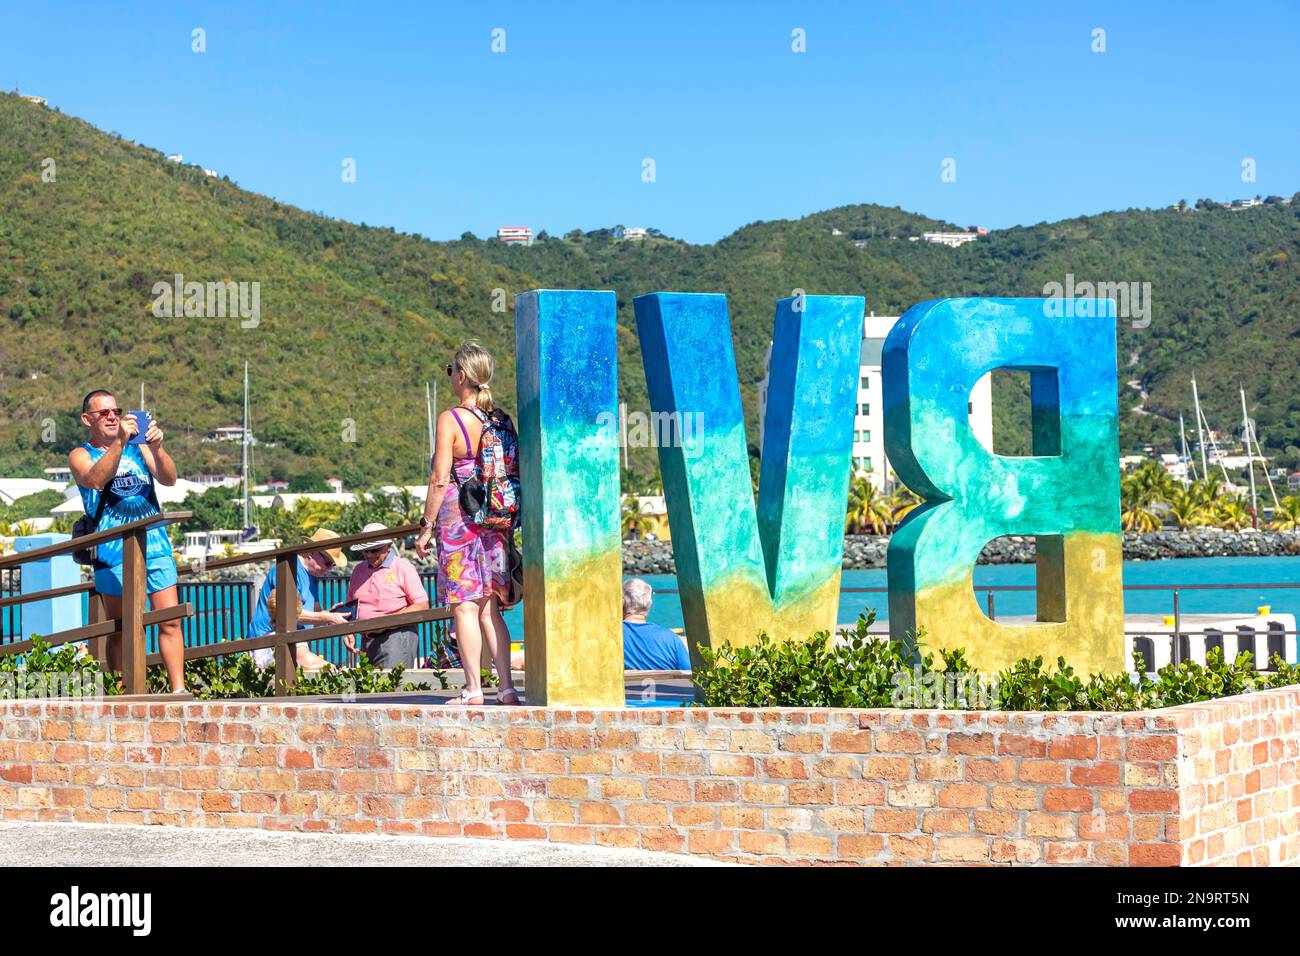 Couple avec BVI (îles Vierges britanniques) panneau à Tortola Pier Park, Road Town, Tortola, les îles Vierges britanniques (BVI), les Petites Antilles, Caraïbes Banque D'Images